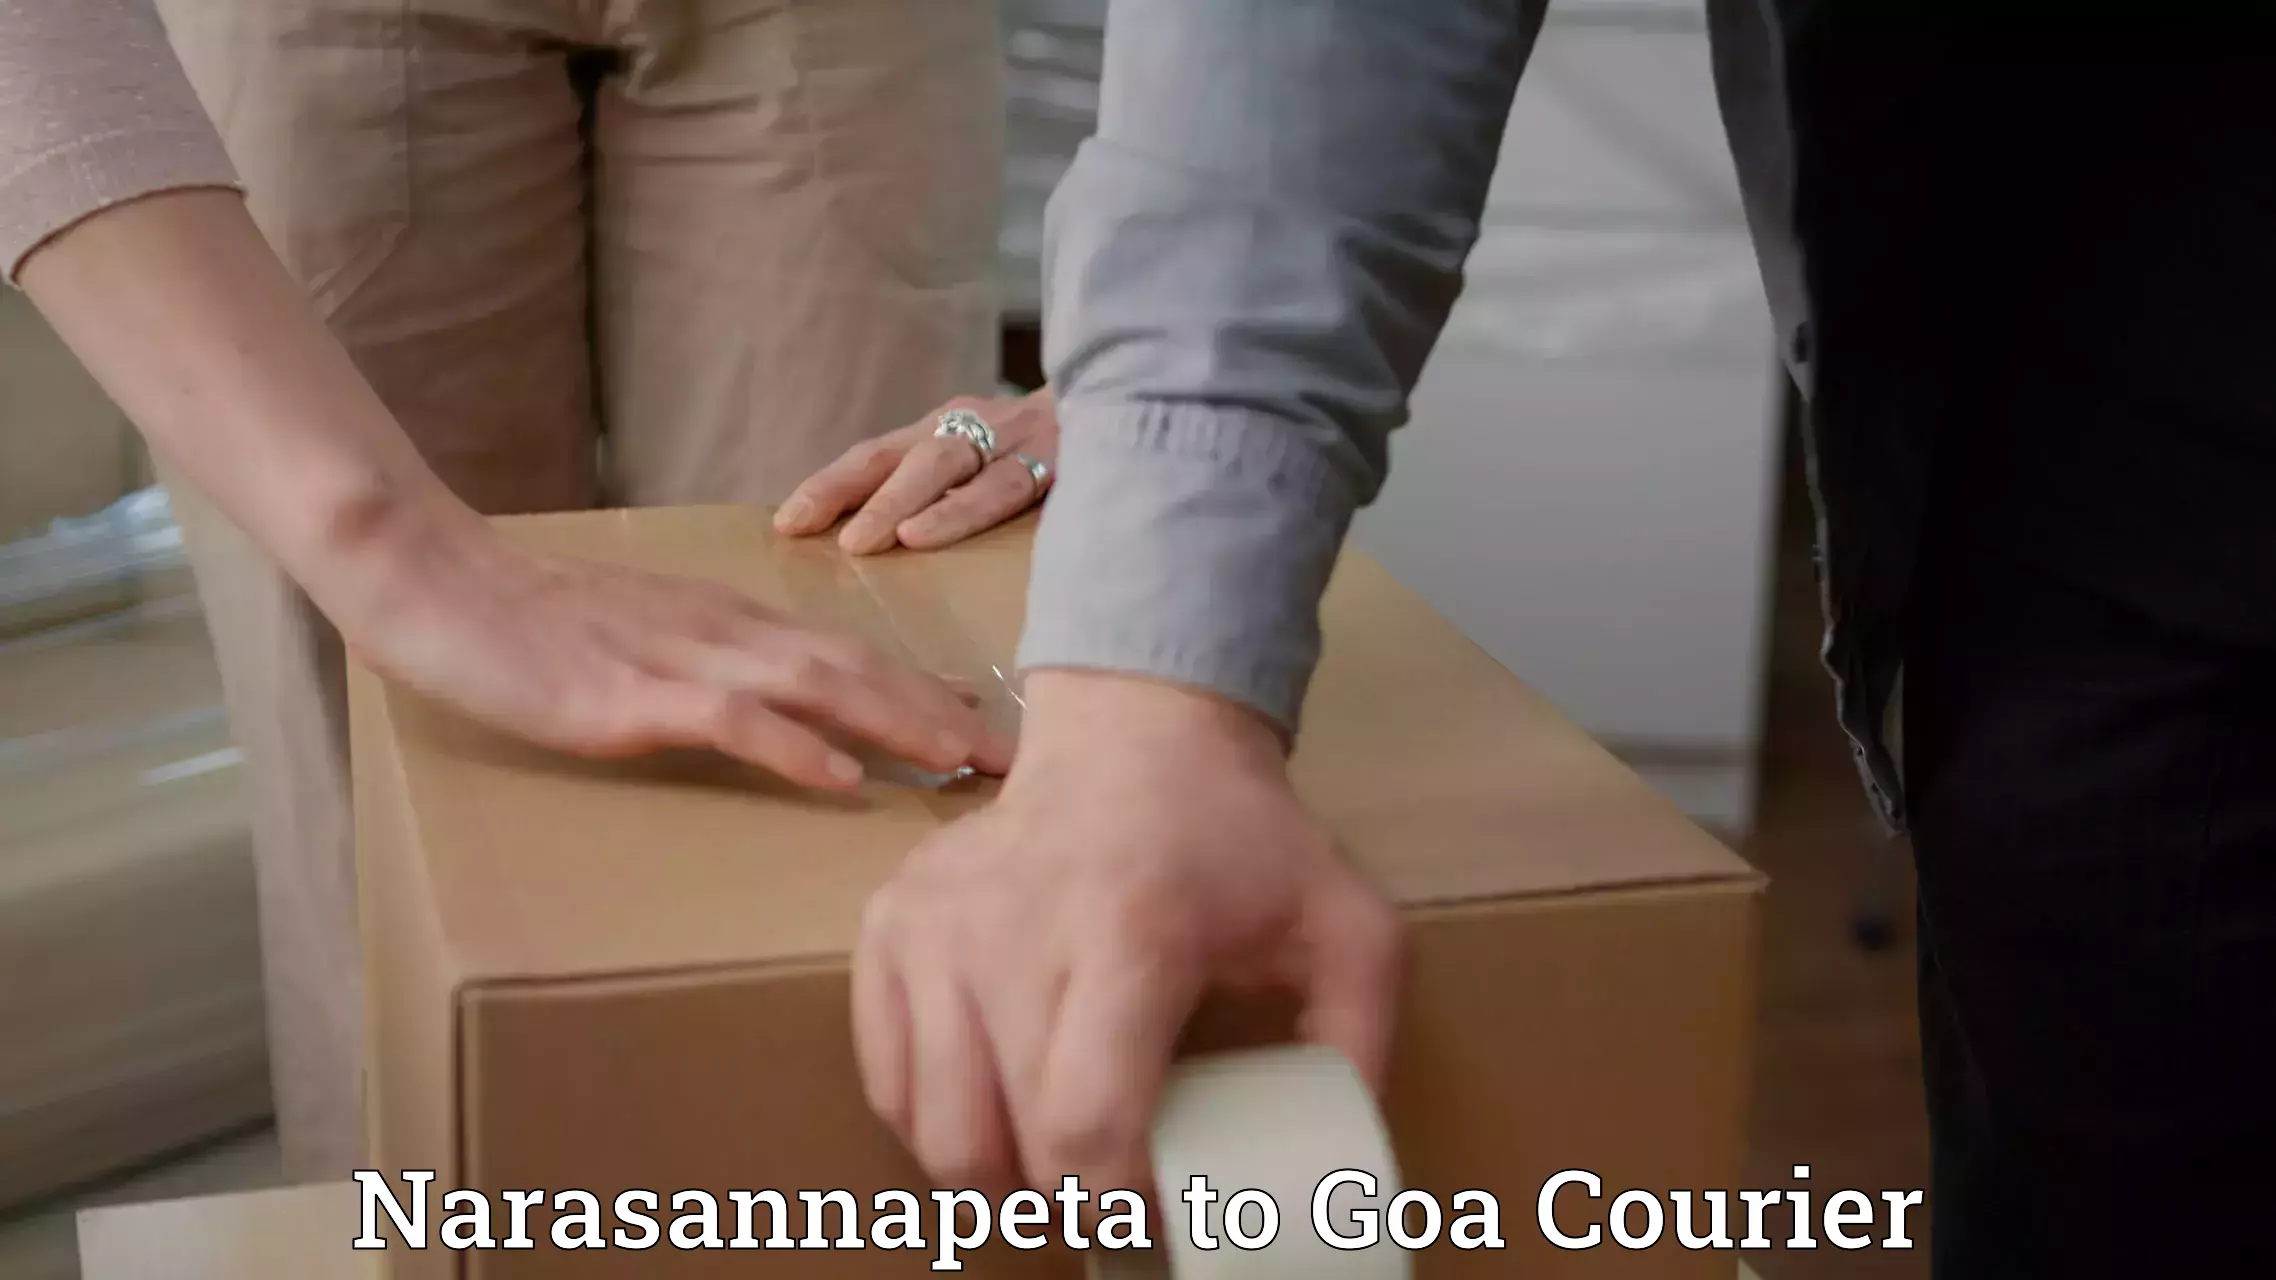 Reliable delivery network Narasannapeta to IIT Goa